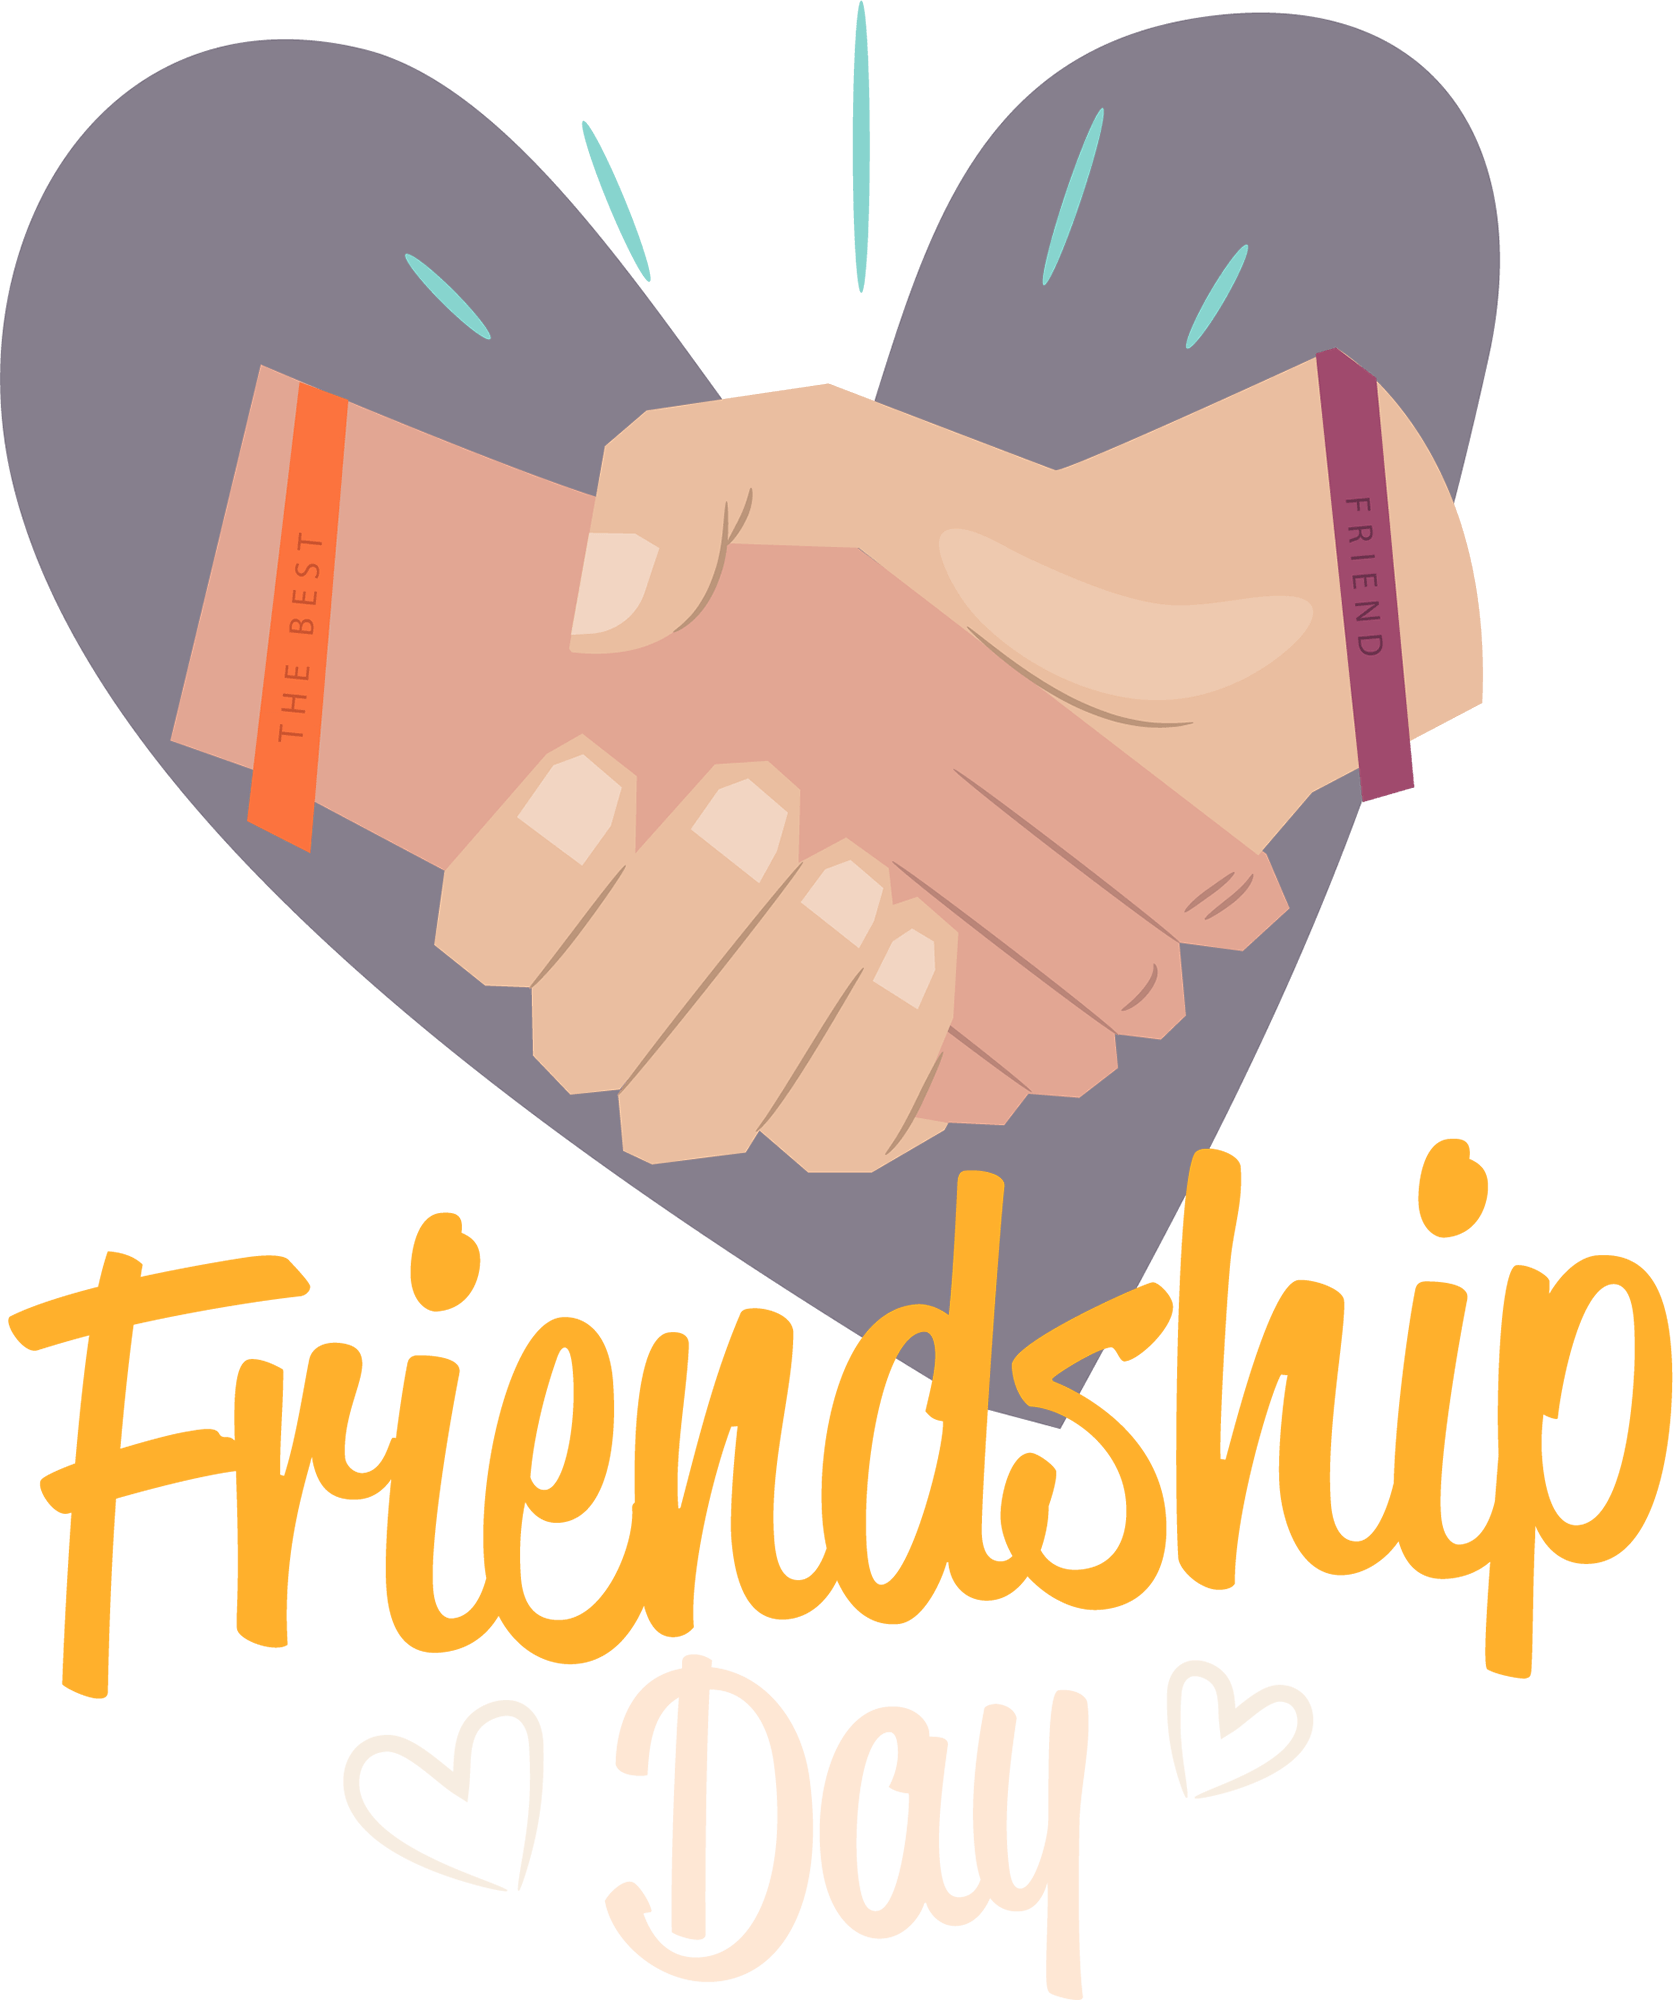 Happy Friendship Day PNG Happy Friendship Day 2021 Free - Pngfreepic